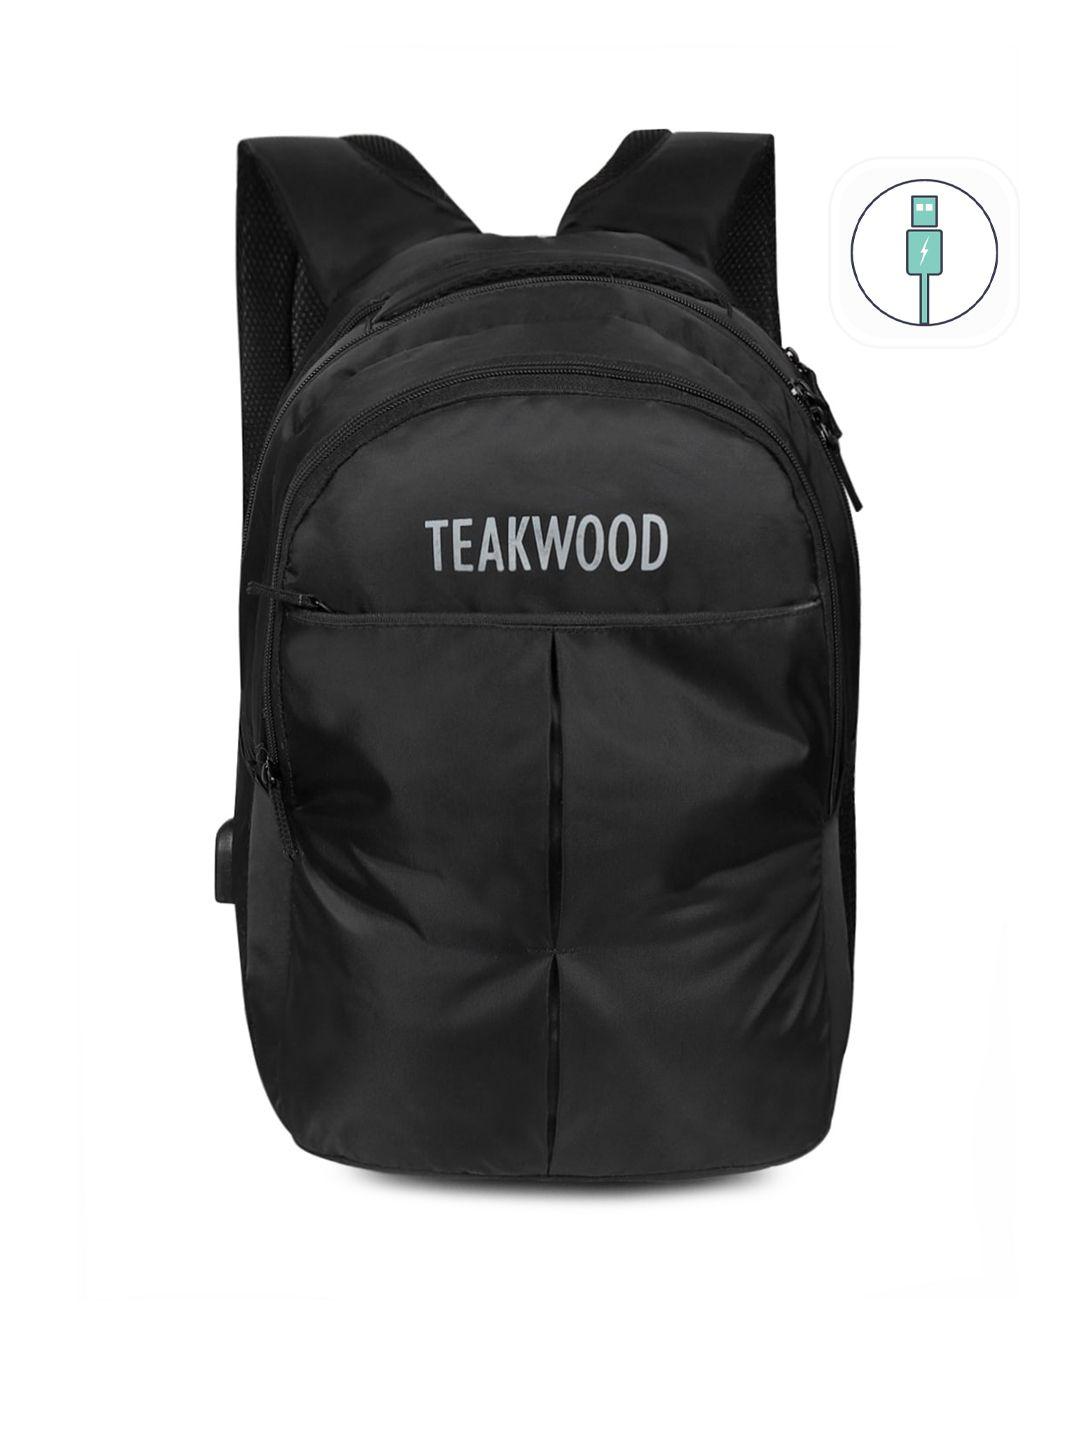 teakwood leathers unisex black backpacks